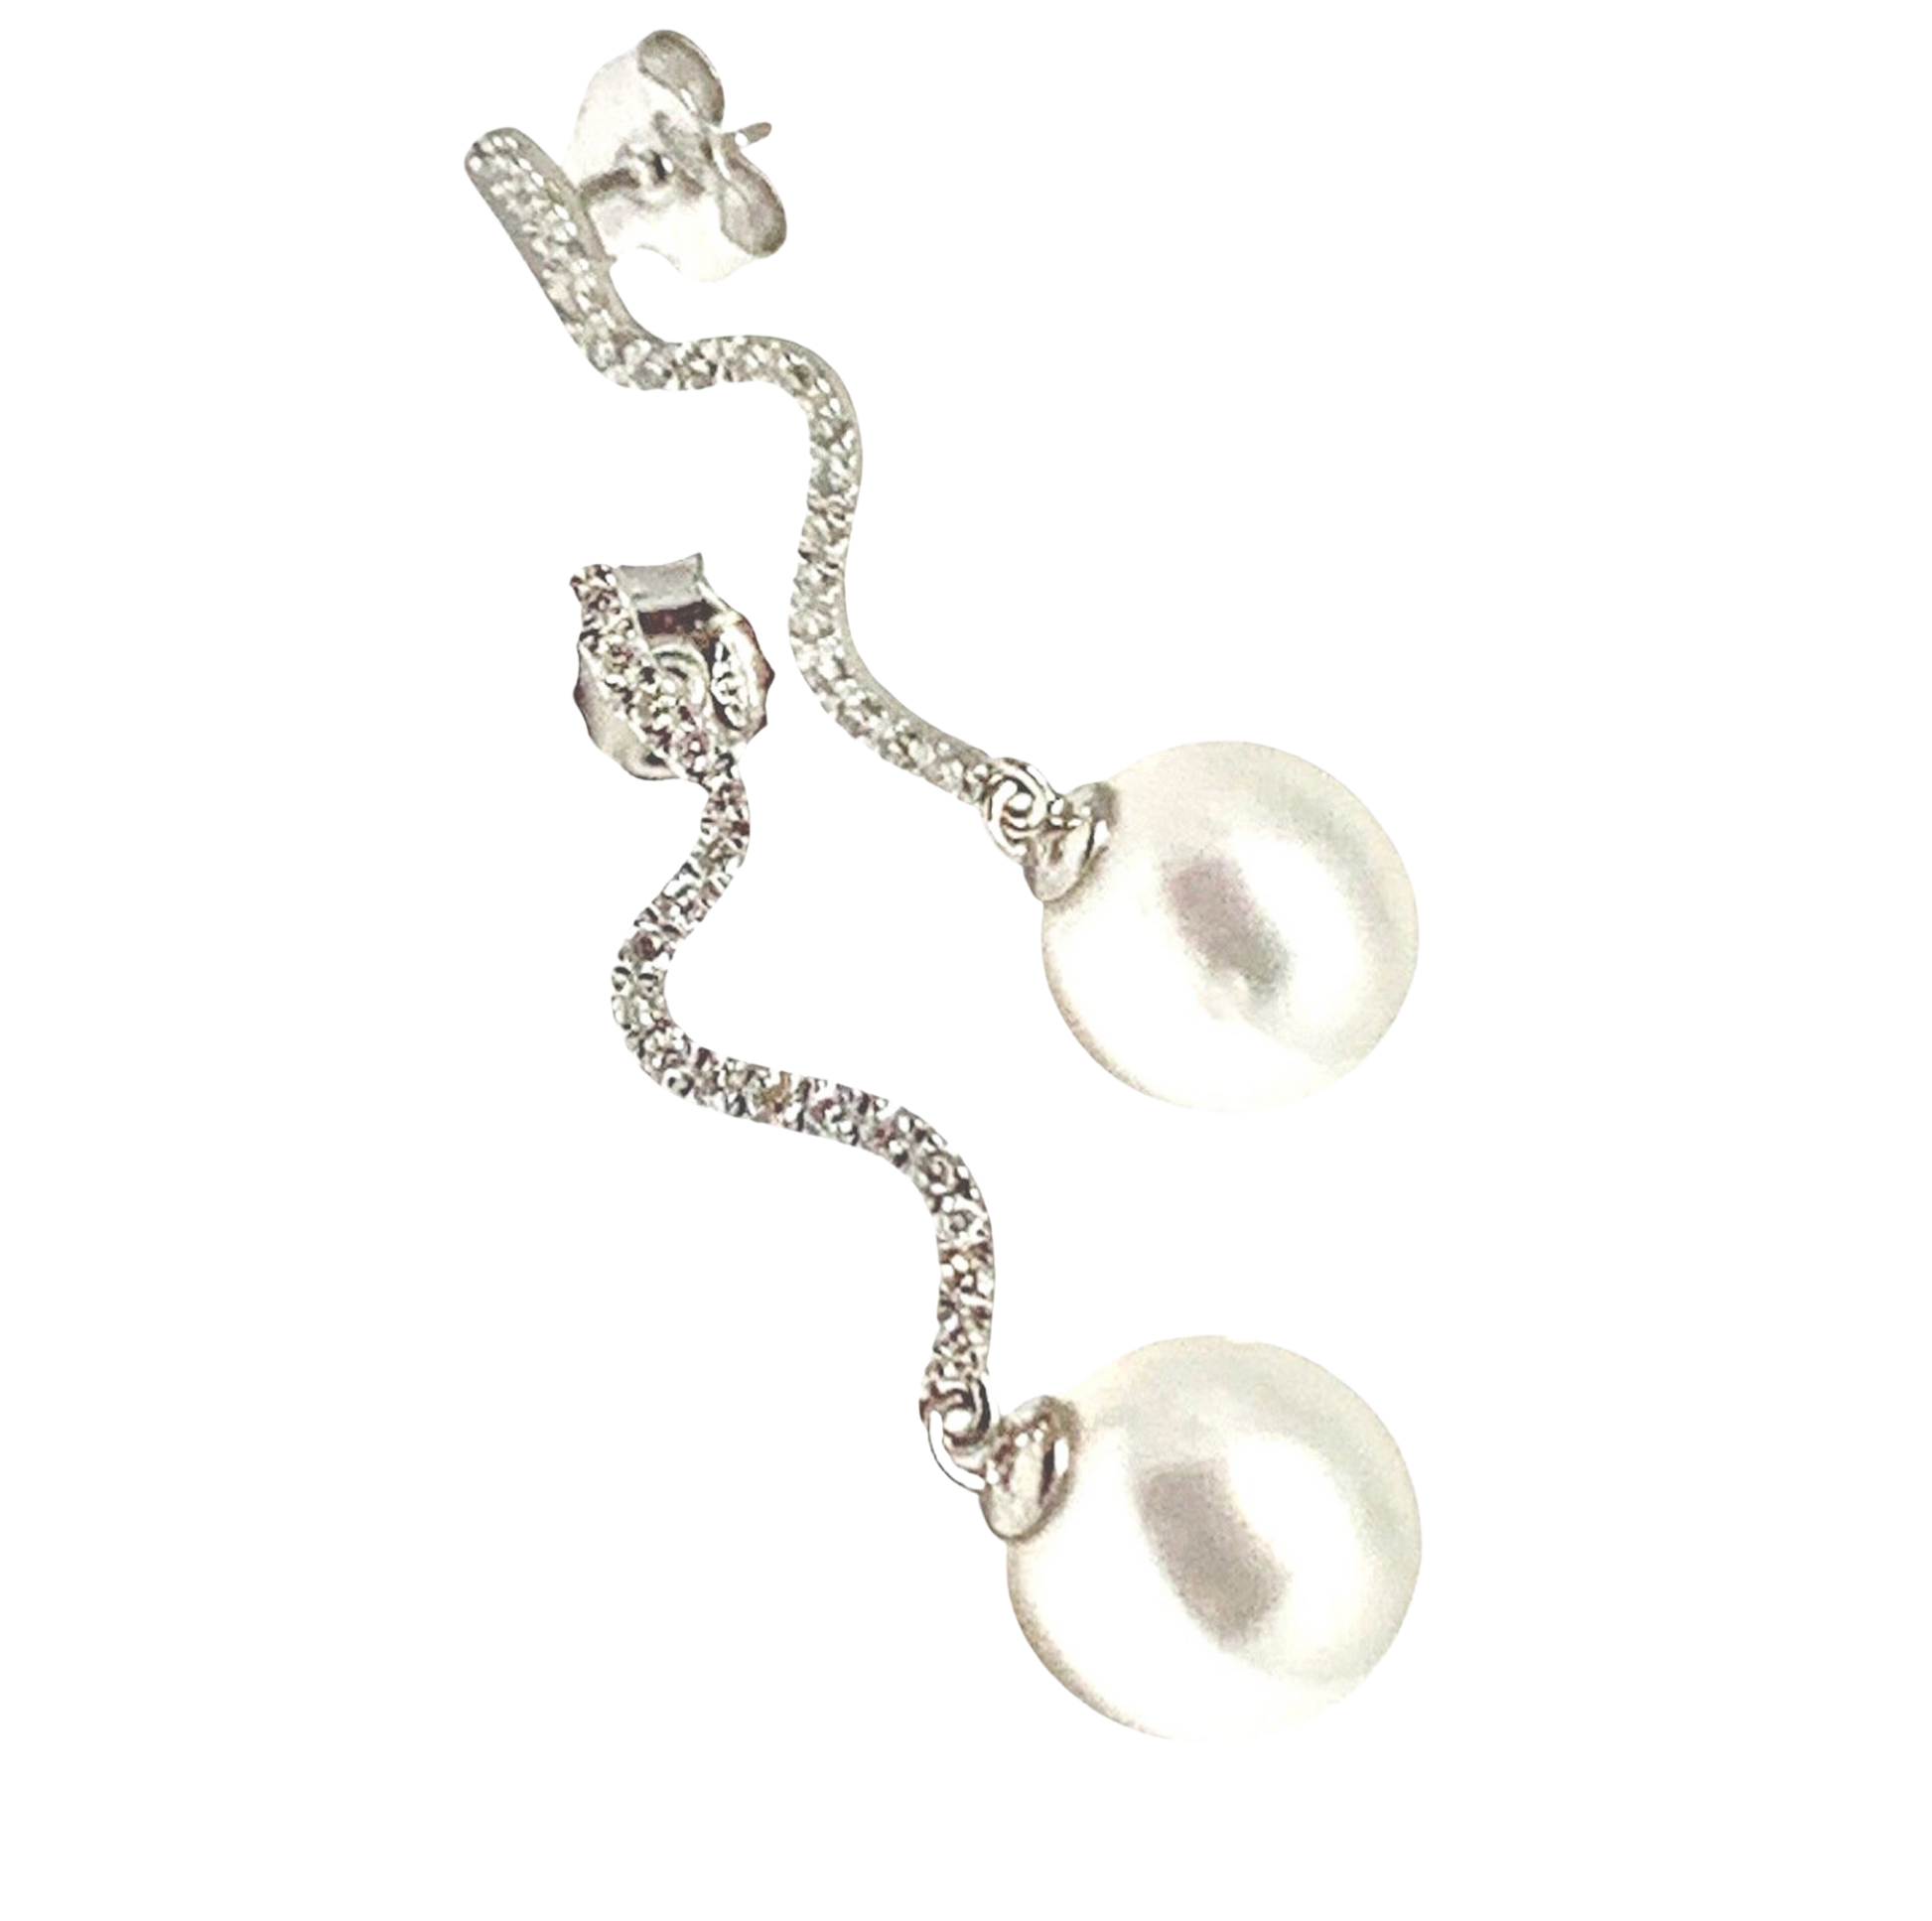 Diamond South Sea Pearl Earrings 14k Gold Large 11.00 mm Certified $4,950 913484 - Certified Fine Jewelry